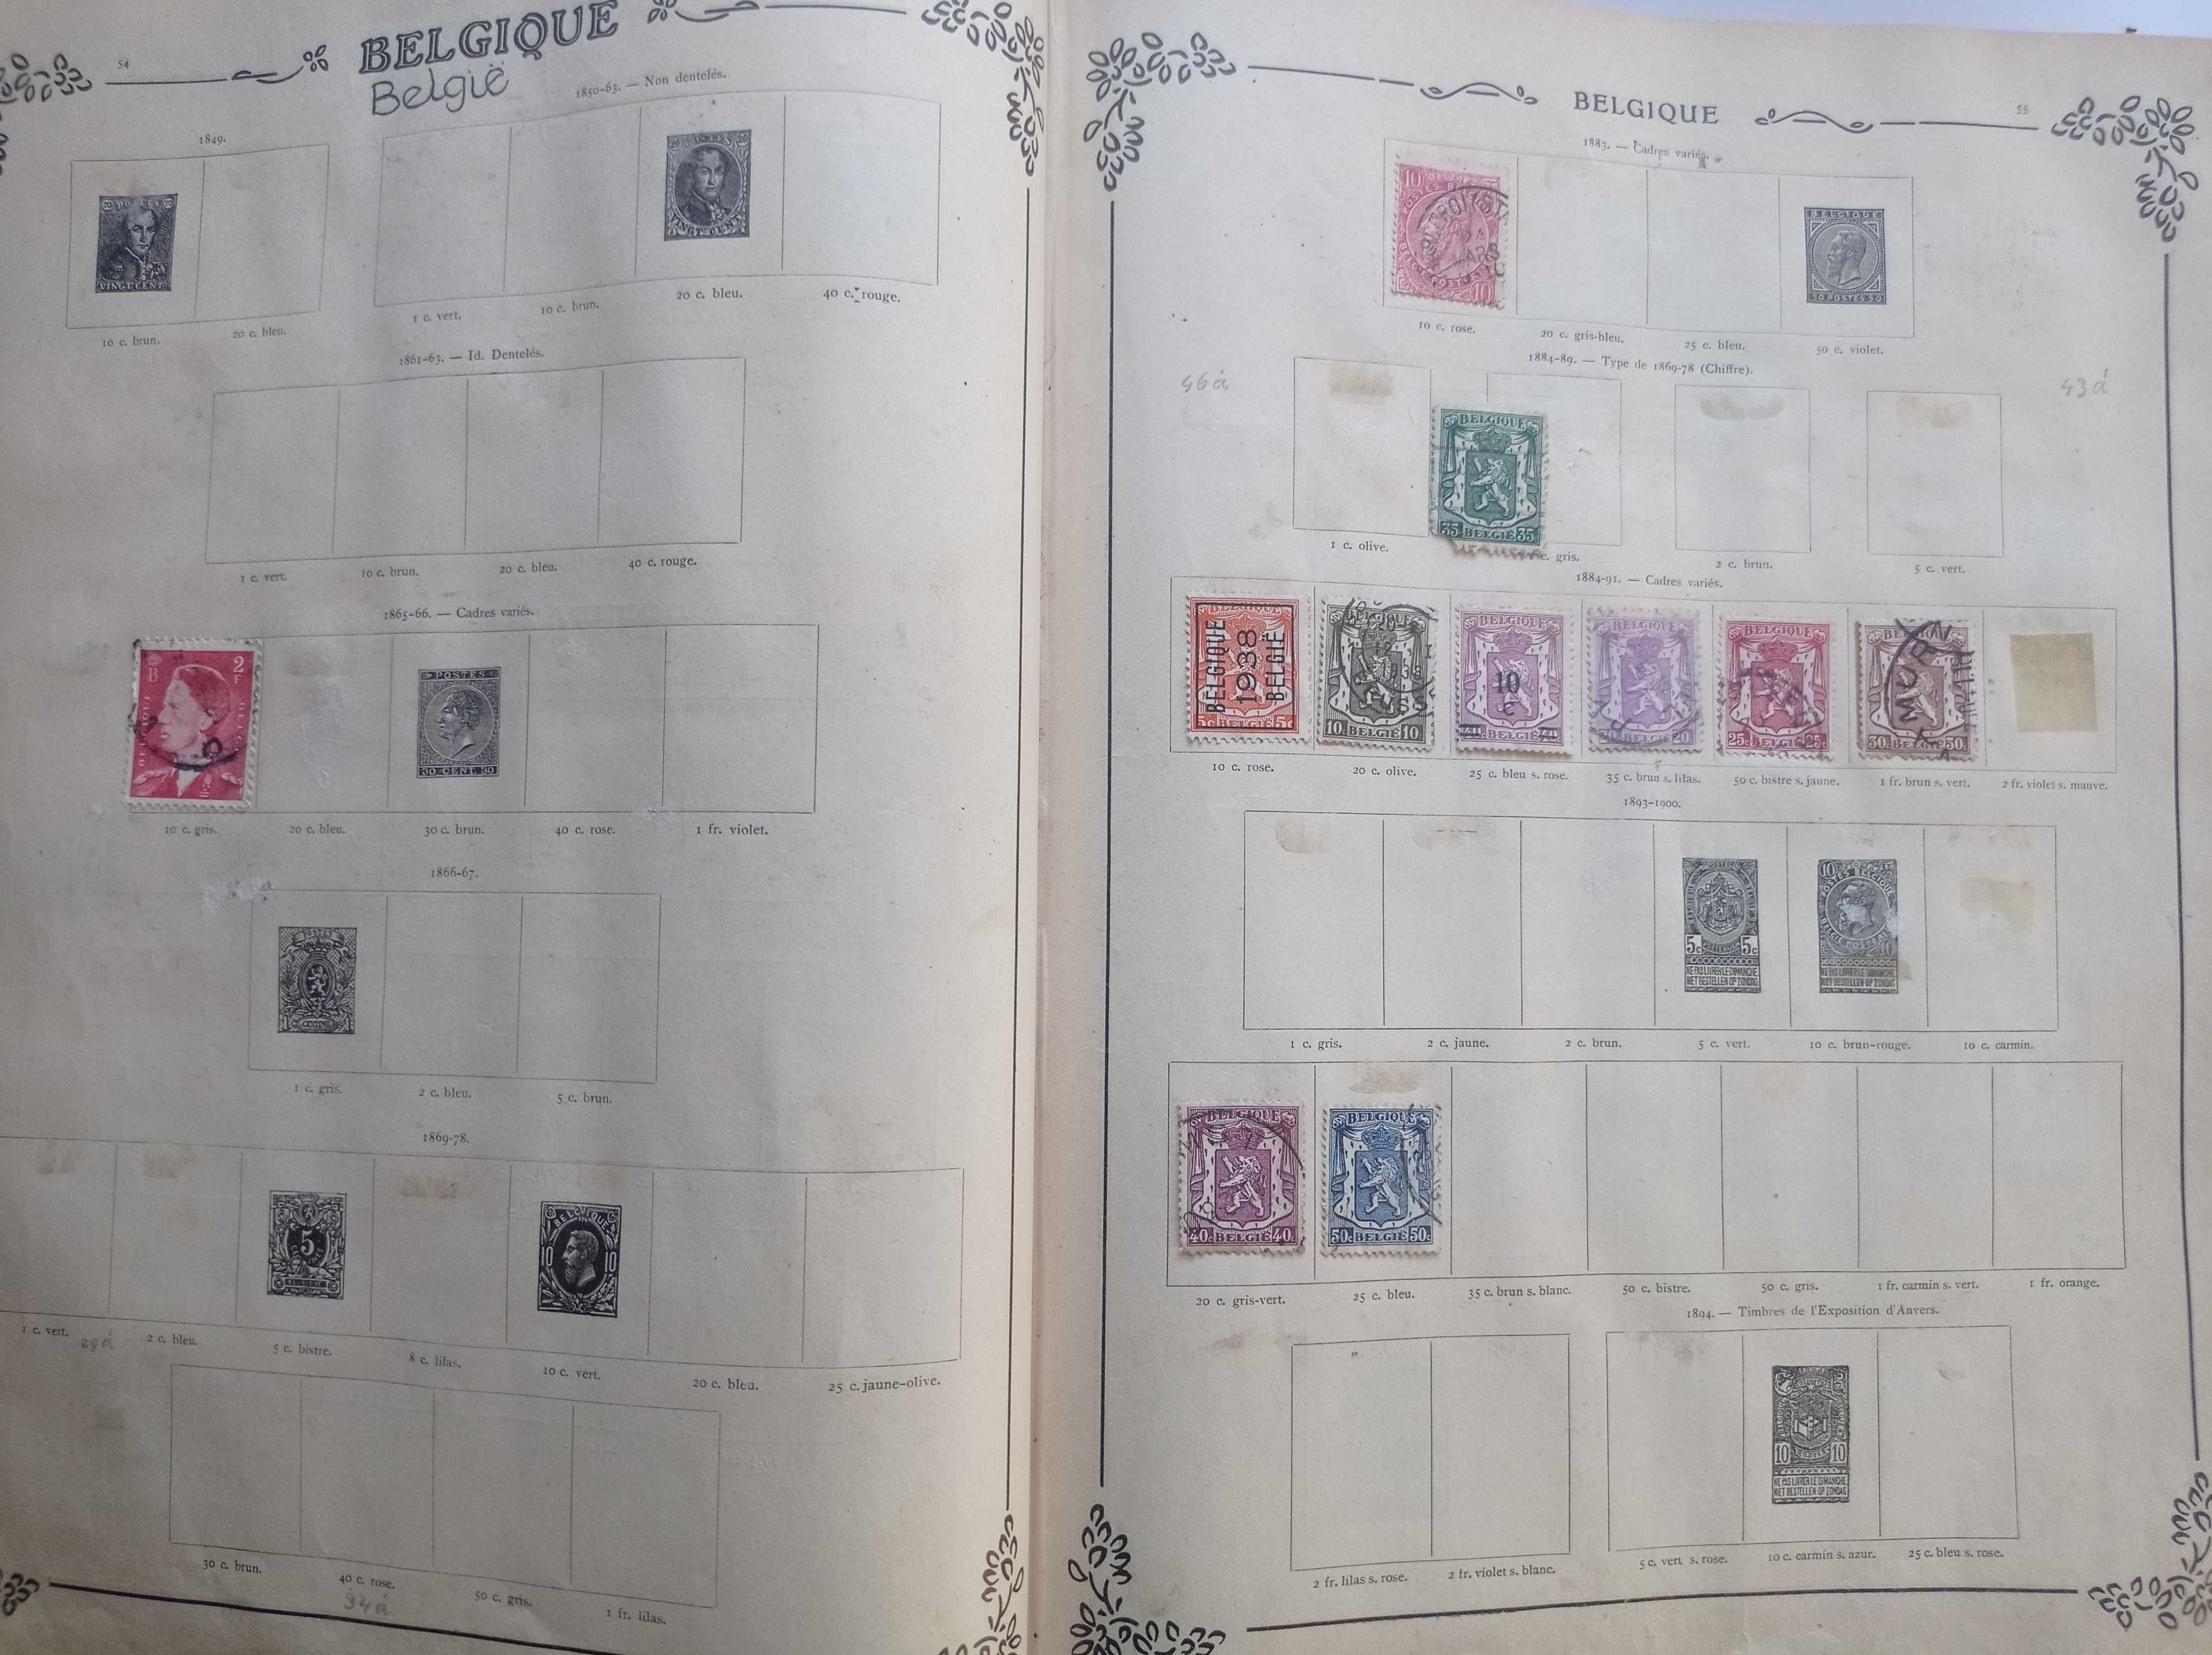 Album Timbres-Poste - 1850 - 1950 - Świat + 854 znaczki pocztowe.